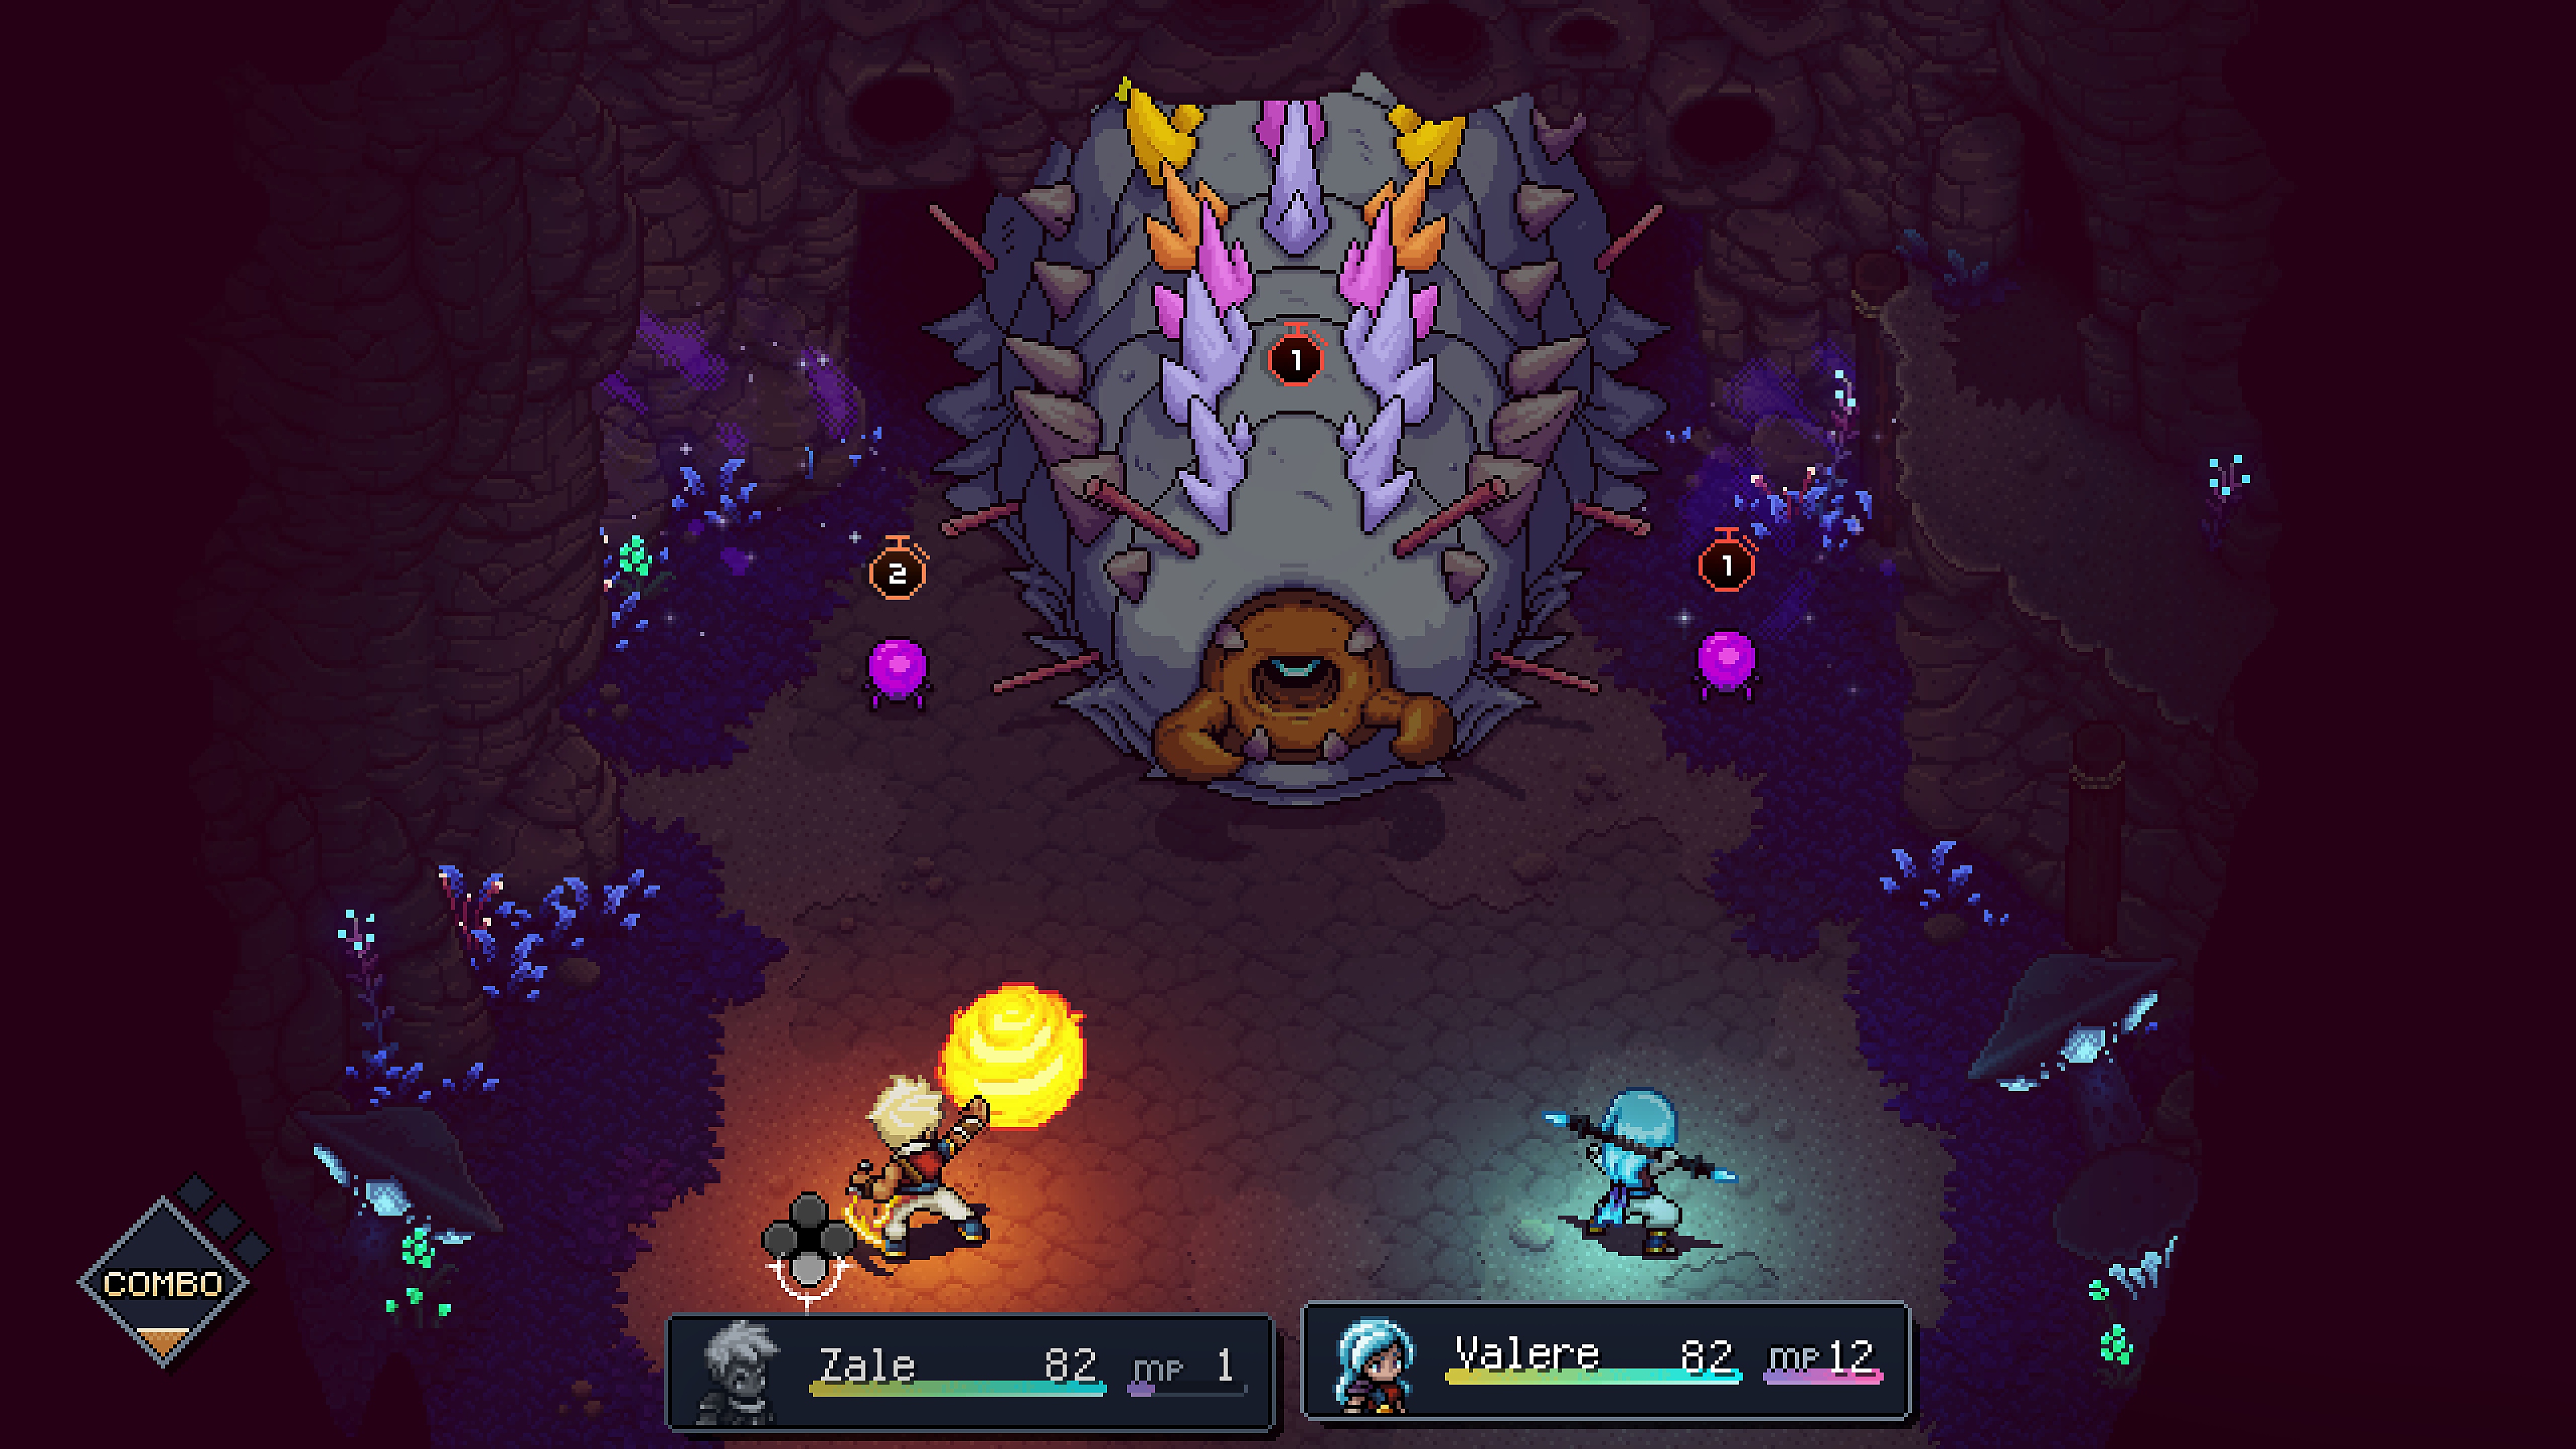 لقطة شاشة من لعبة sea of stars تعرض قتالاً مع زعيم